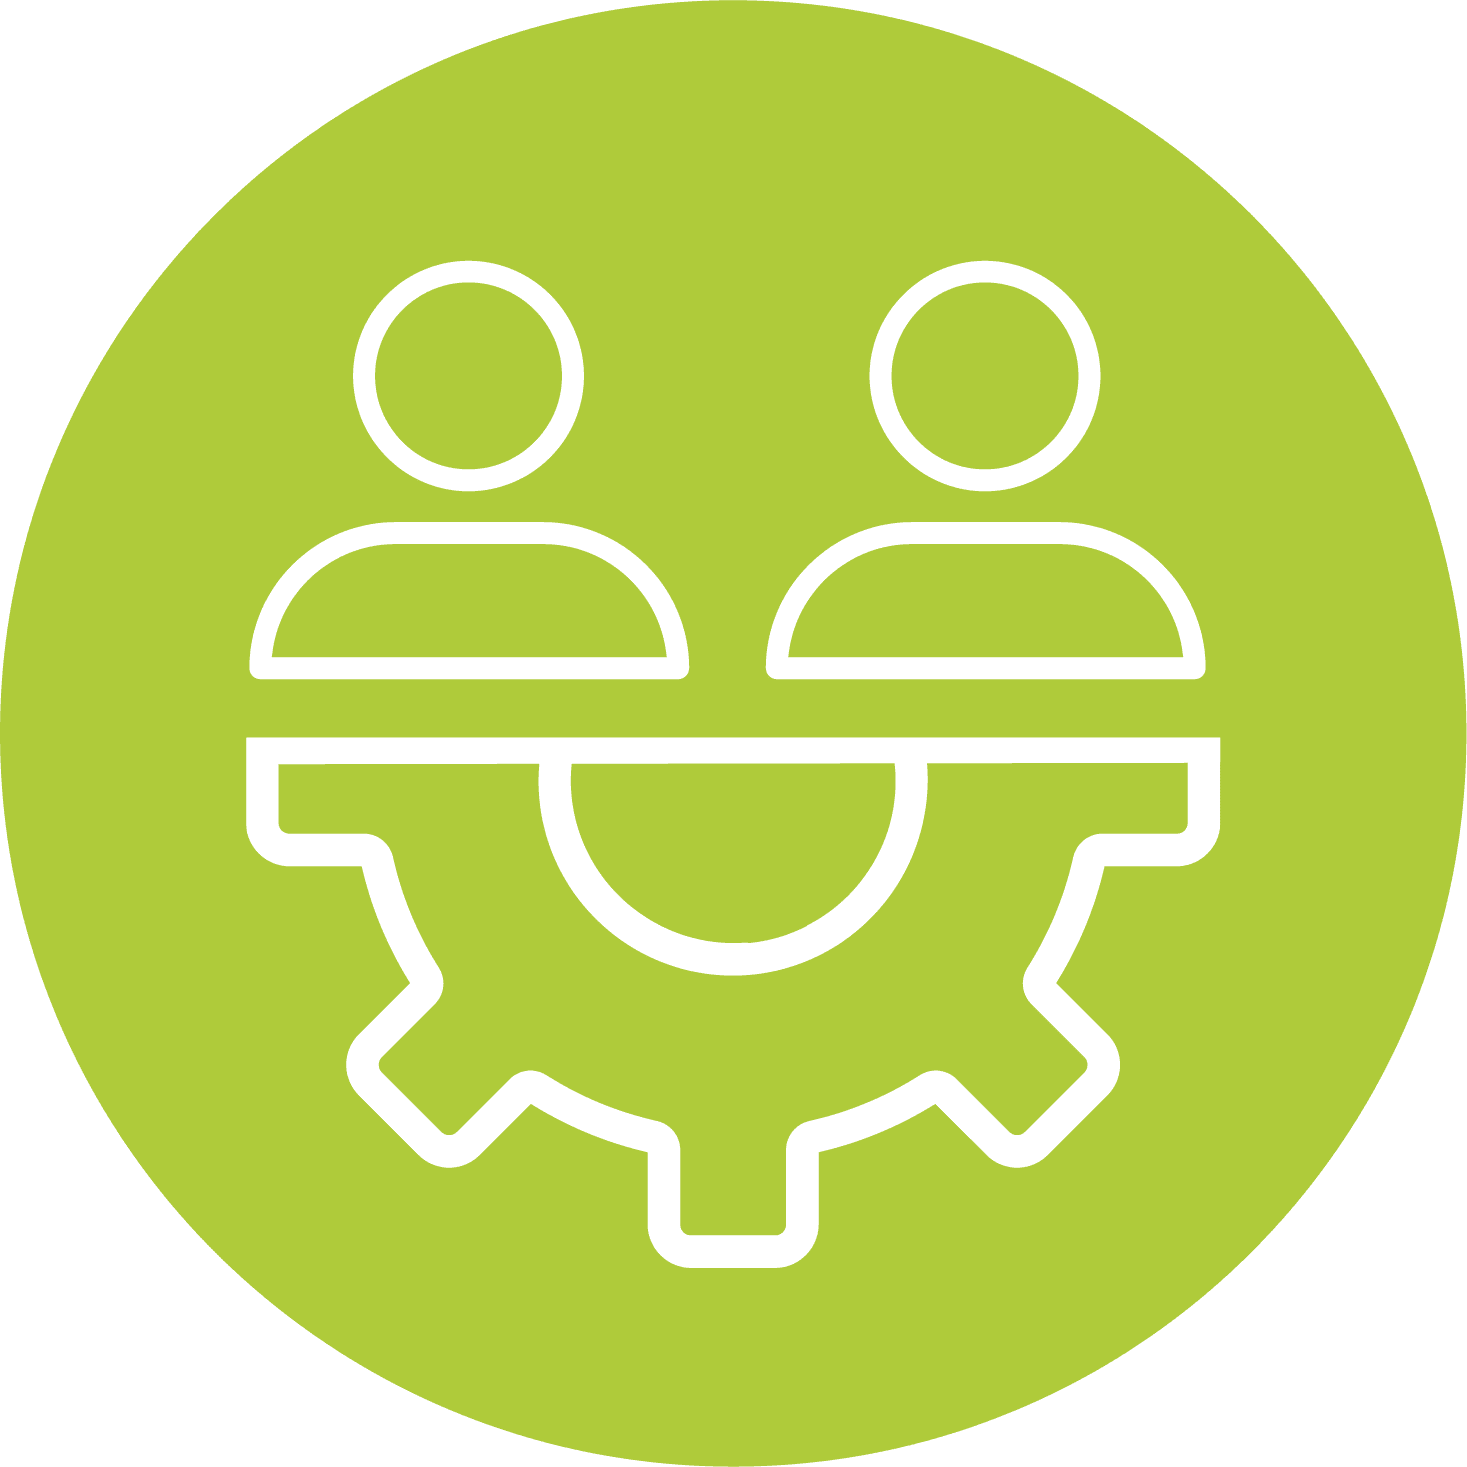 Icon mit zwei Personen und einem halben Zahnrad auf einem grünen kreisförmigen Hintergrund. Es repräsentiert Erfahrung und Wissensaustausch.